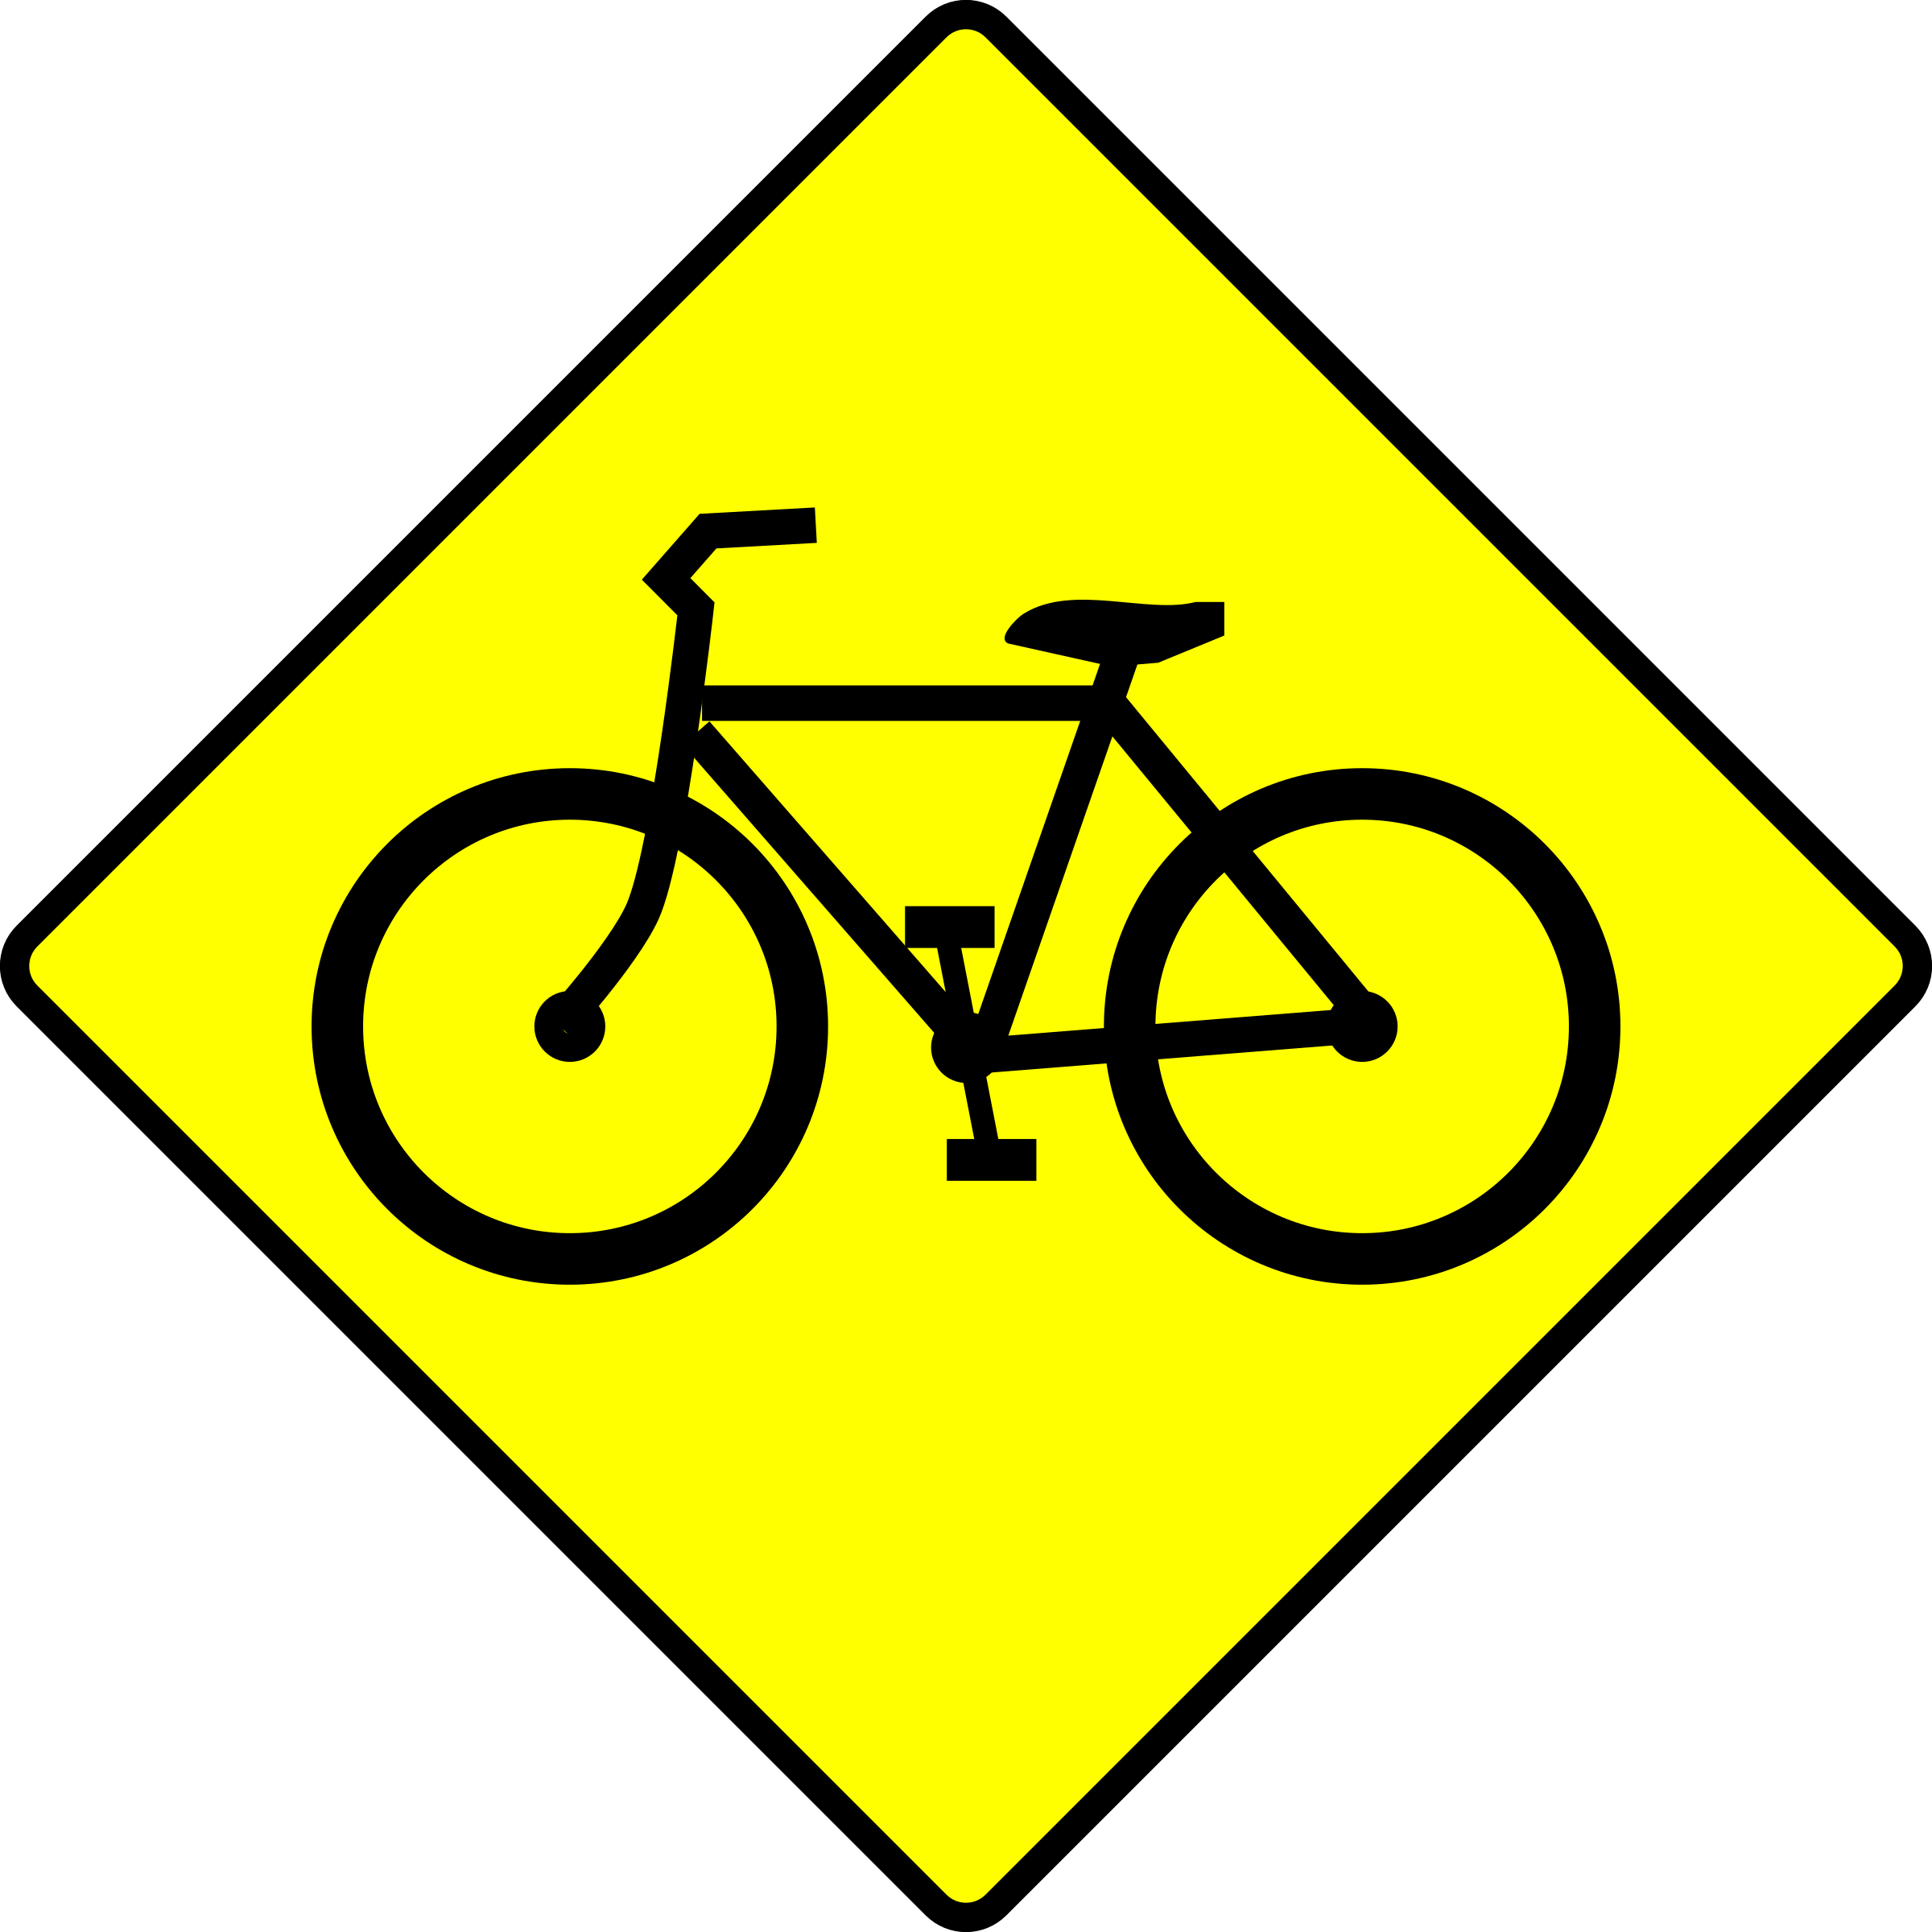 Caution Pedestrian - Pedestrian Crossing Sign (2400x2400)